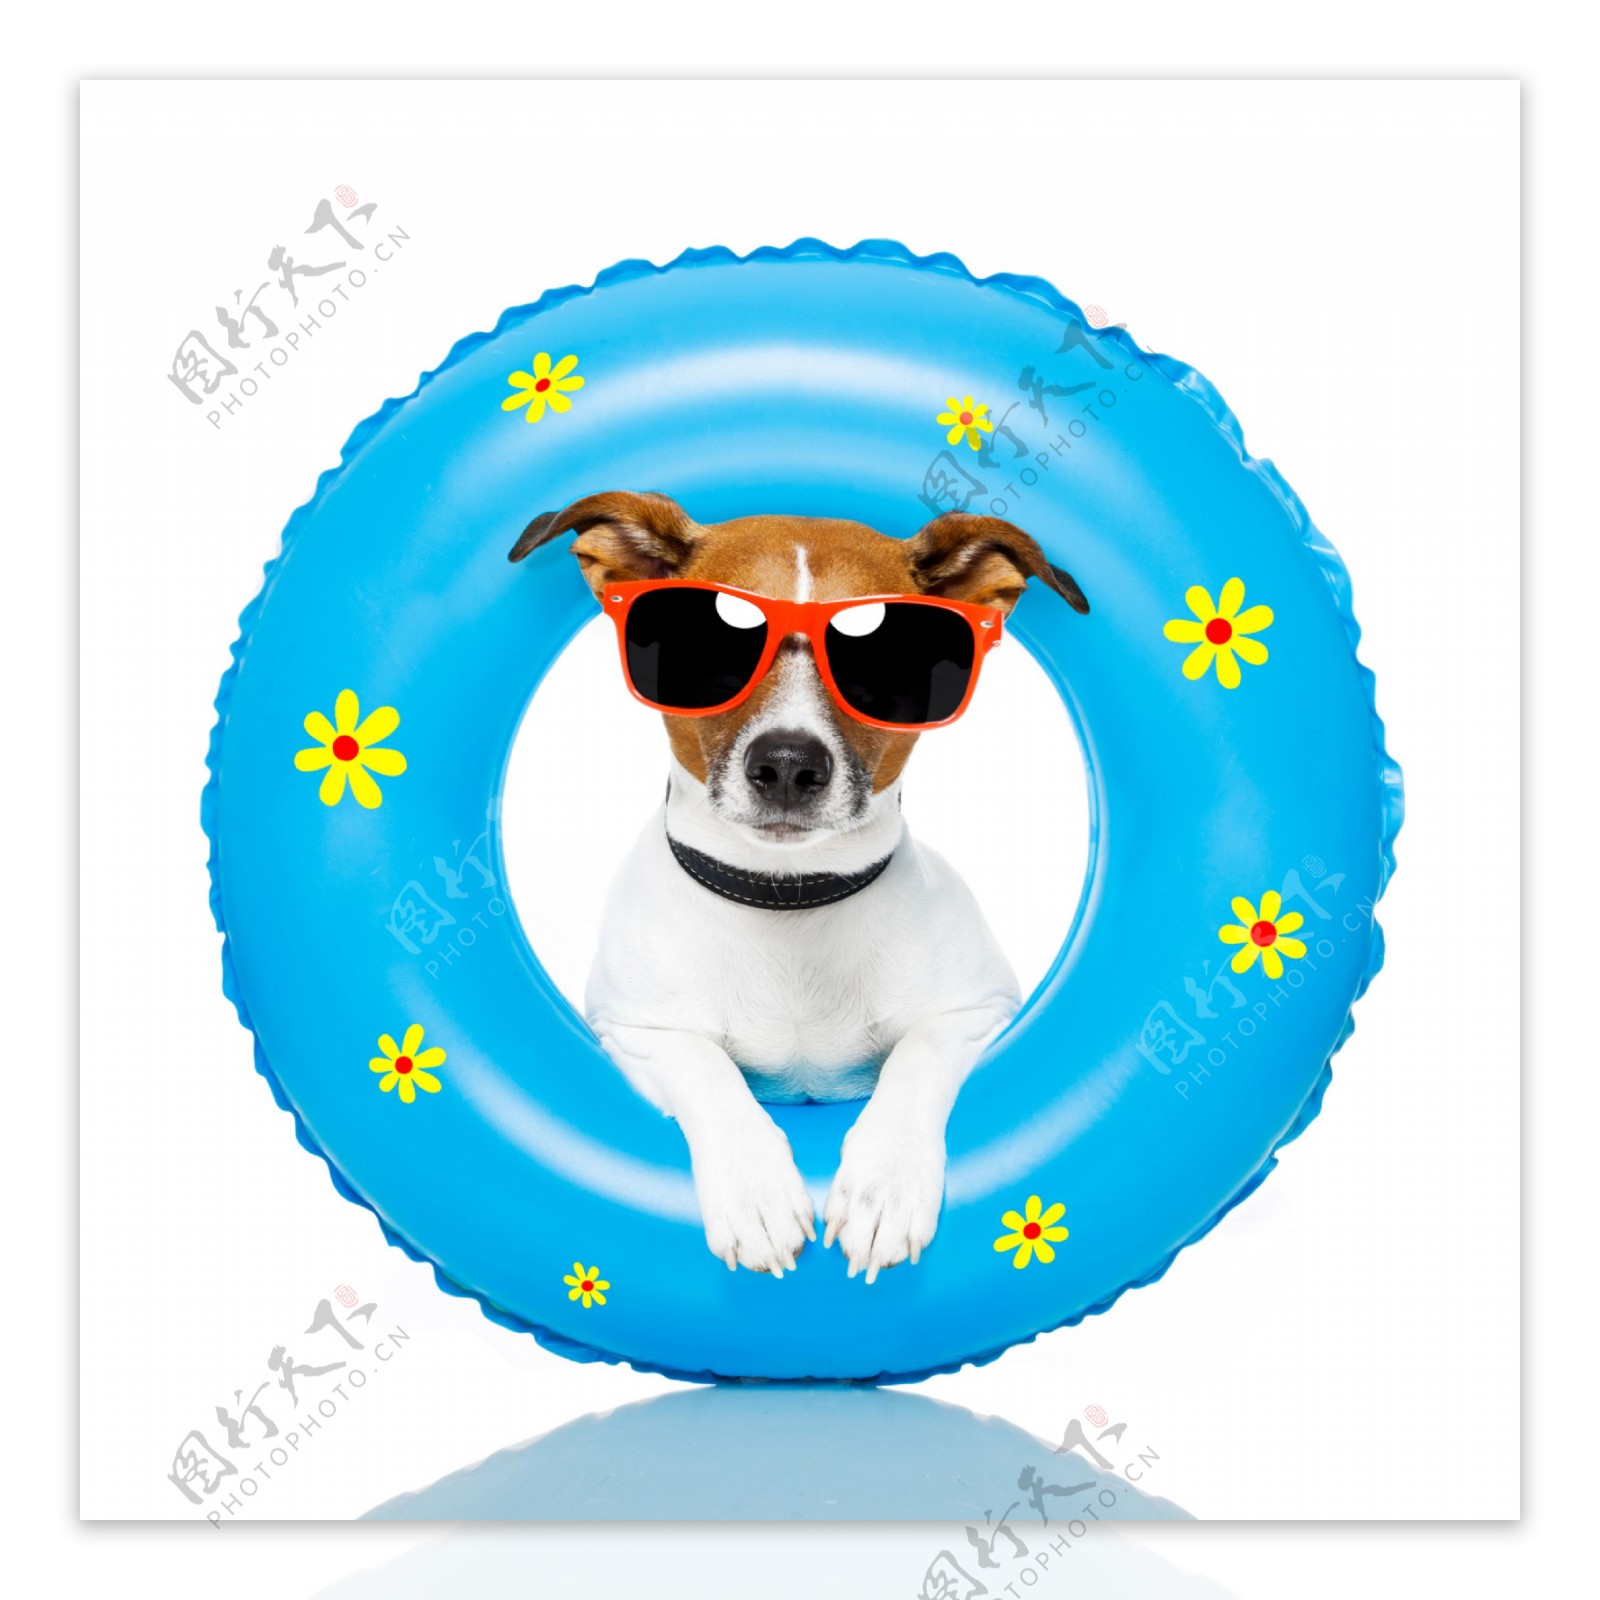 游泳圈中戴太阳镜的狗图片